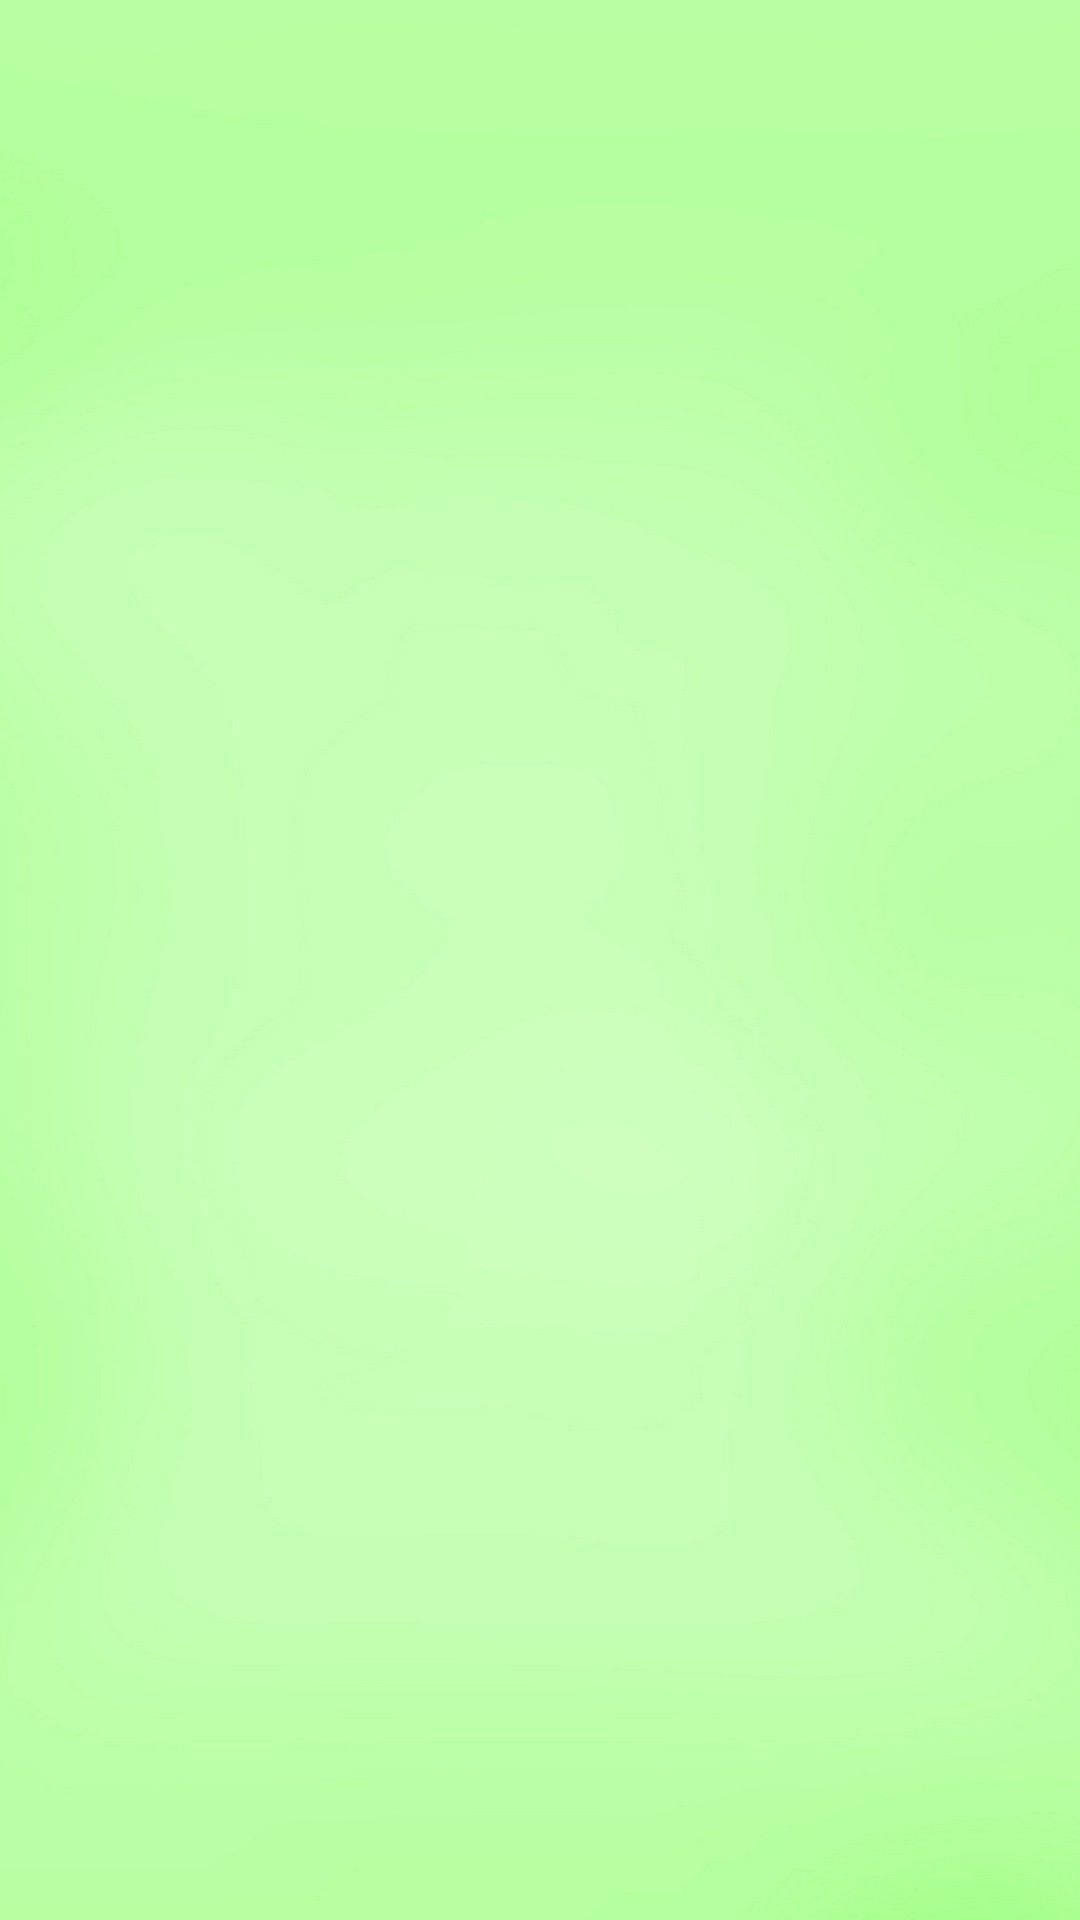 cirkulære slap af skrot Download Pastel Light Green Plain Wallpaper | Wallpapers.com